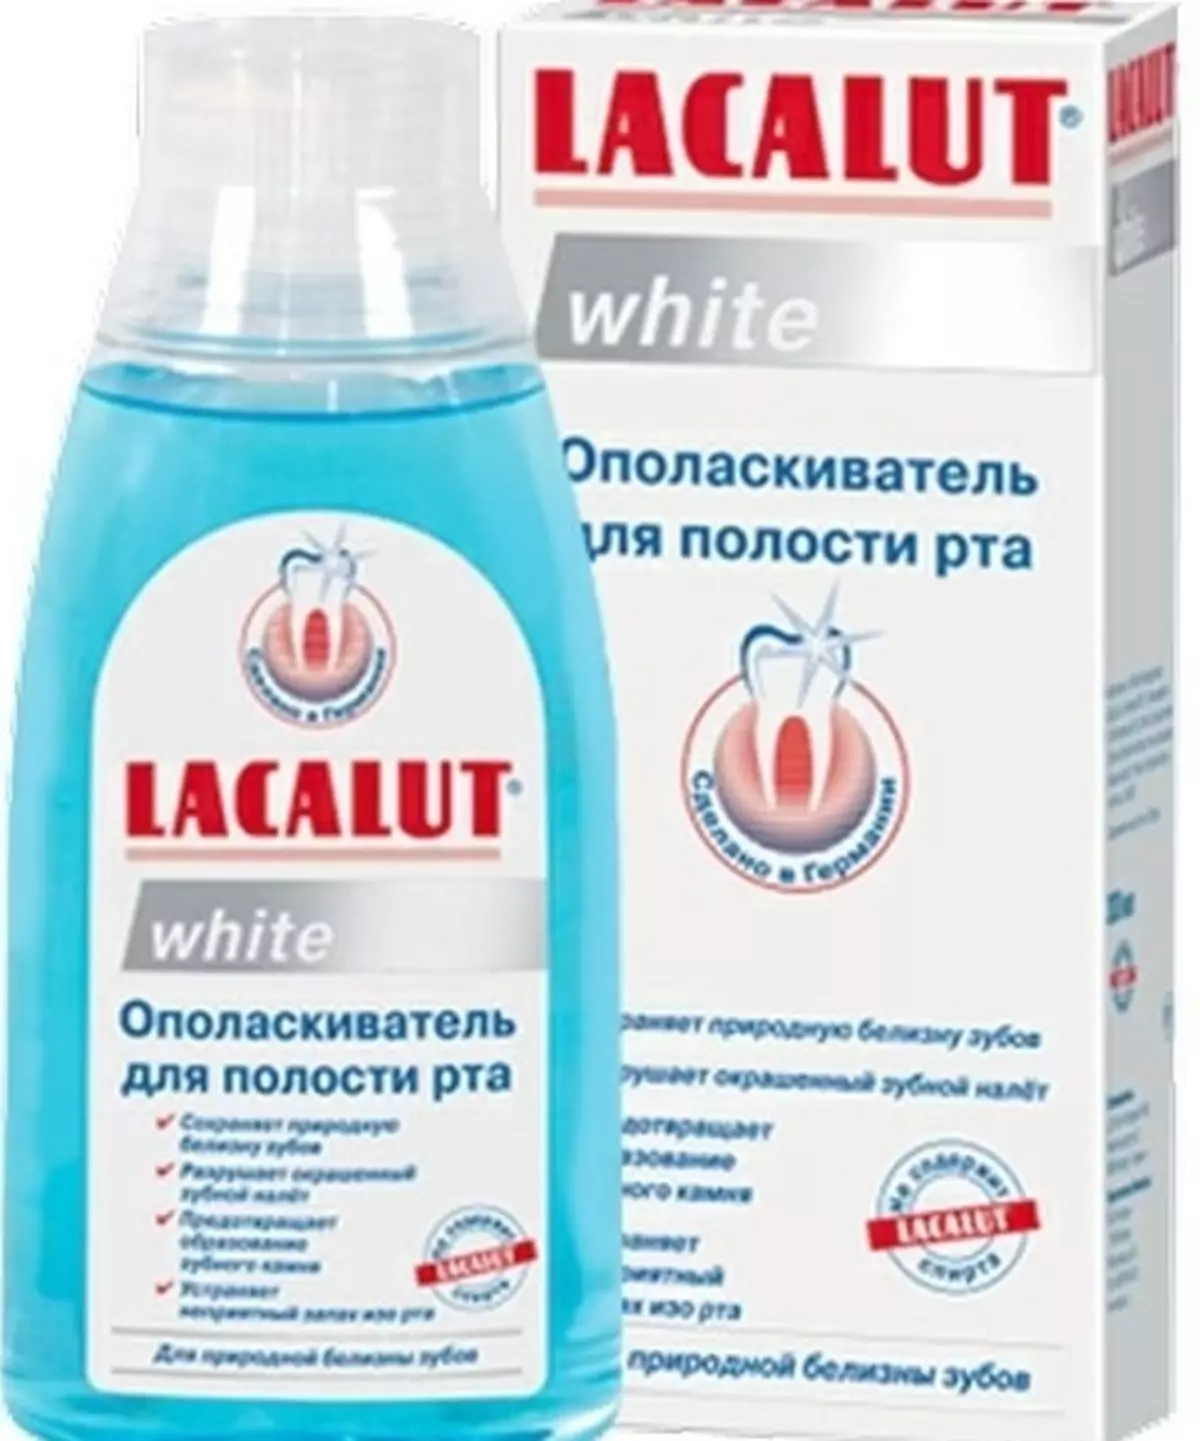 Rinsers Lacalut: Aktiv, gevoelig en wit voor de mondholte, hun compositie en kenmerken van toepassing 24087_12